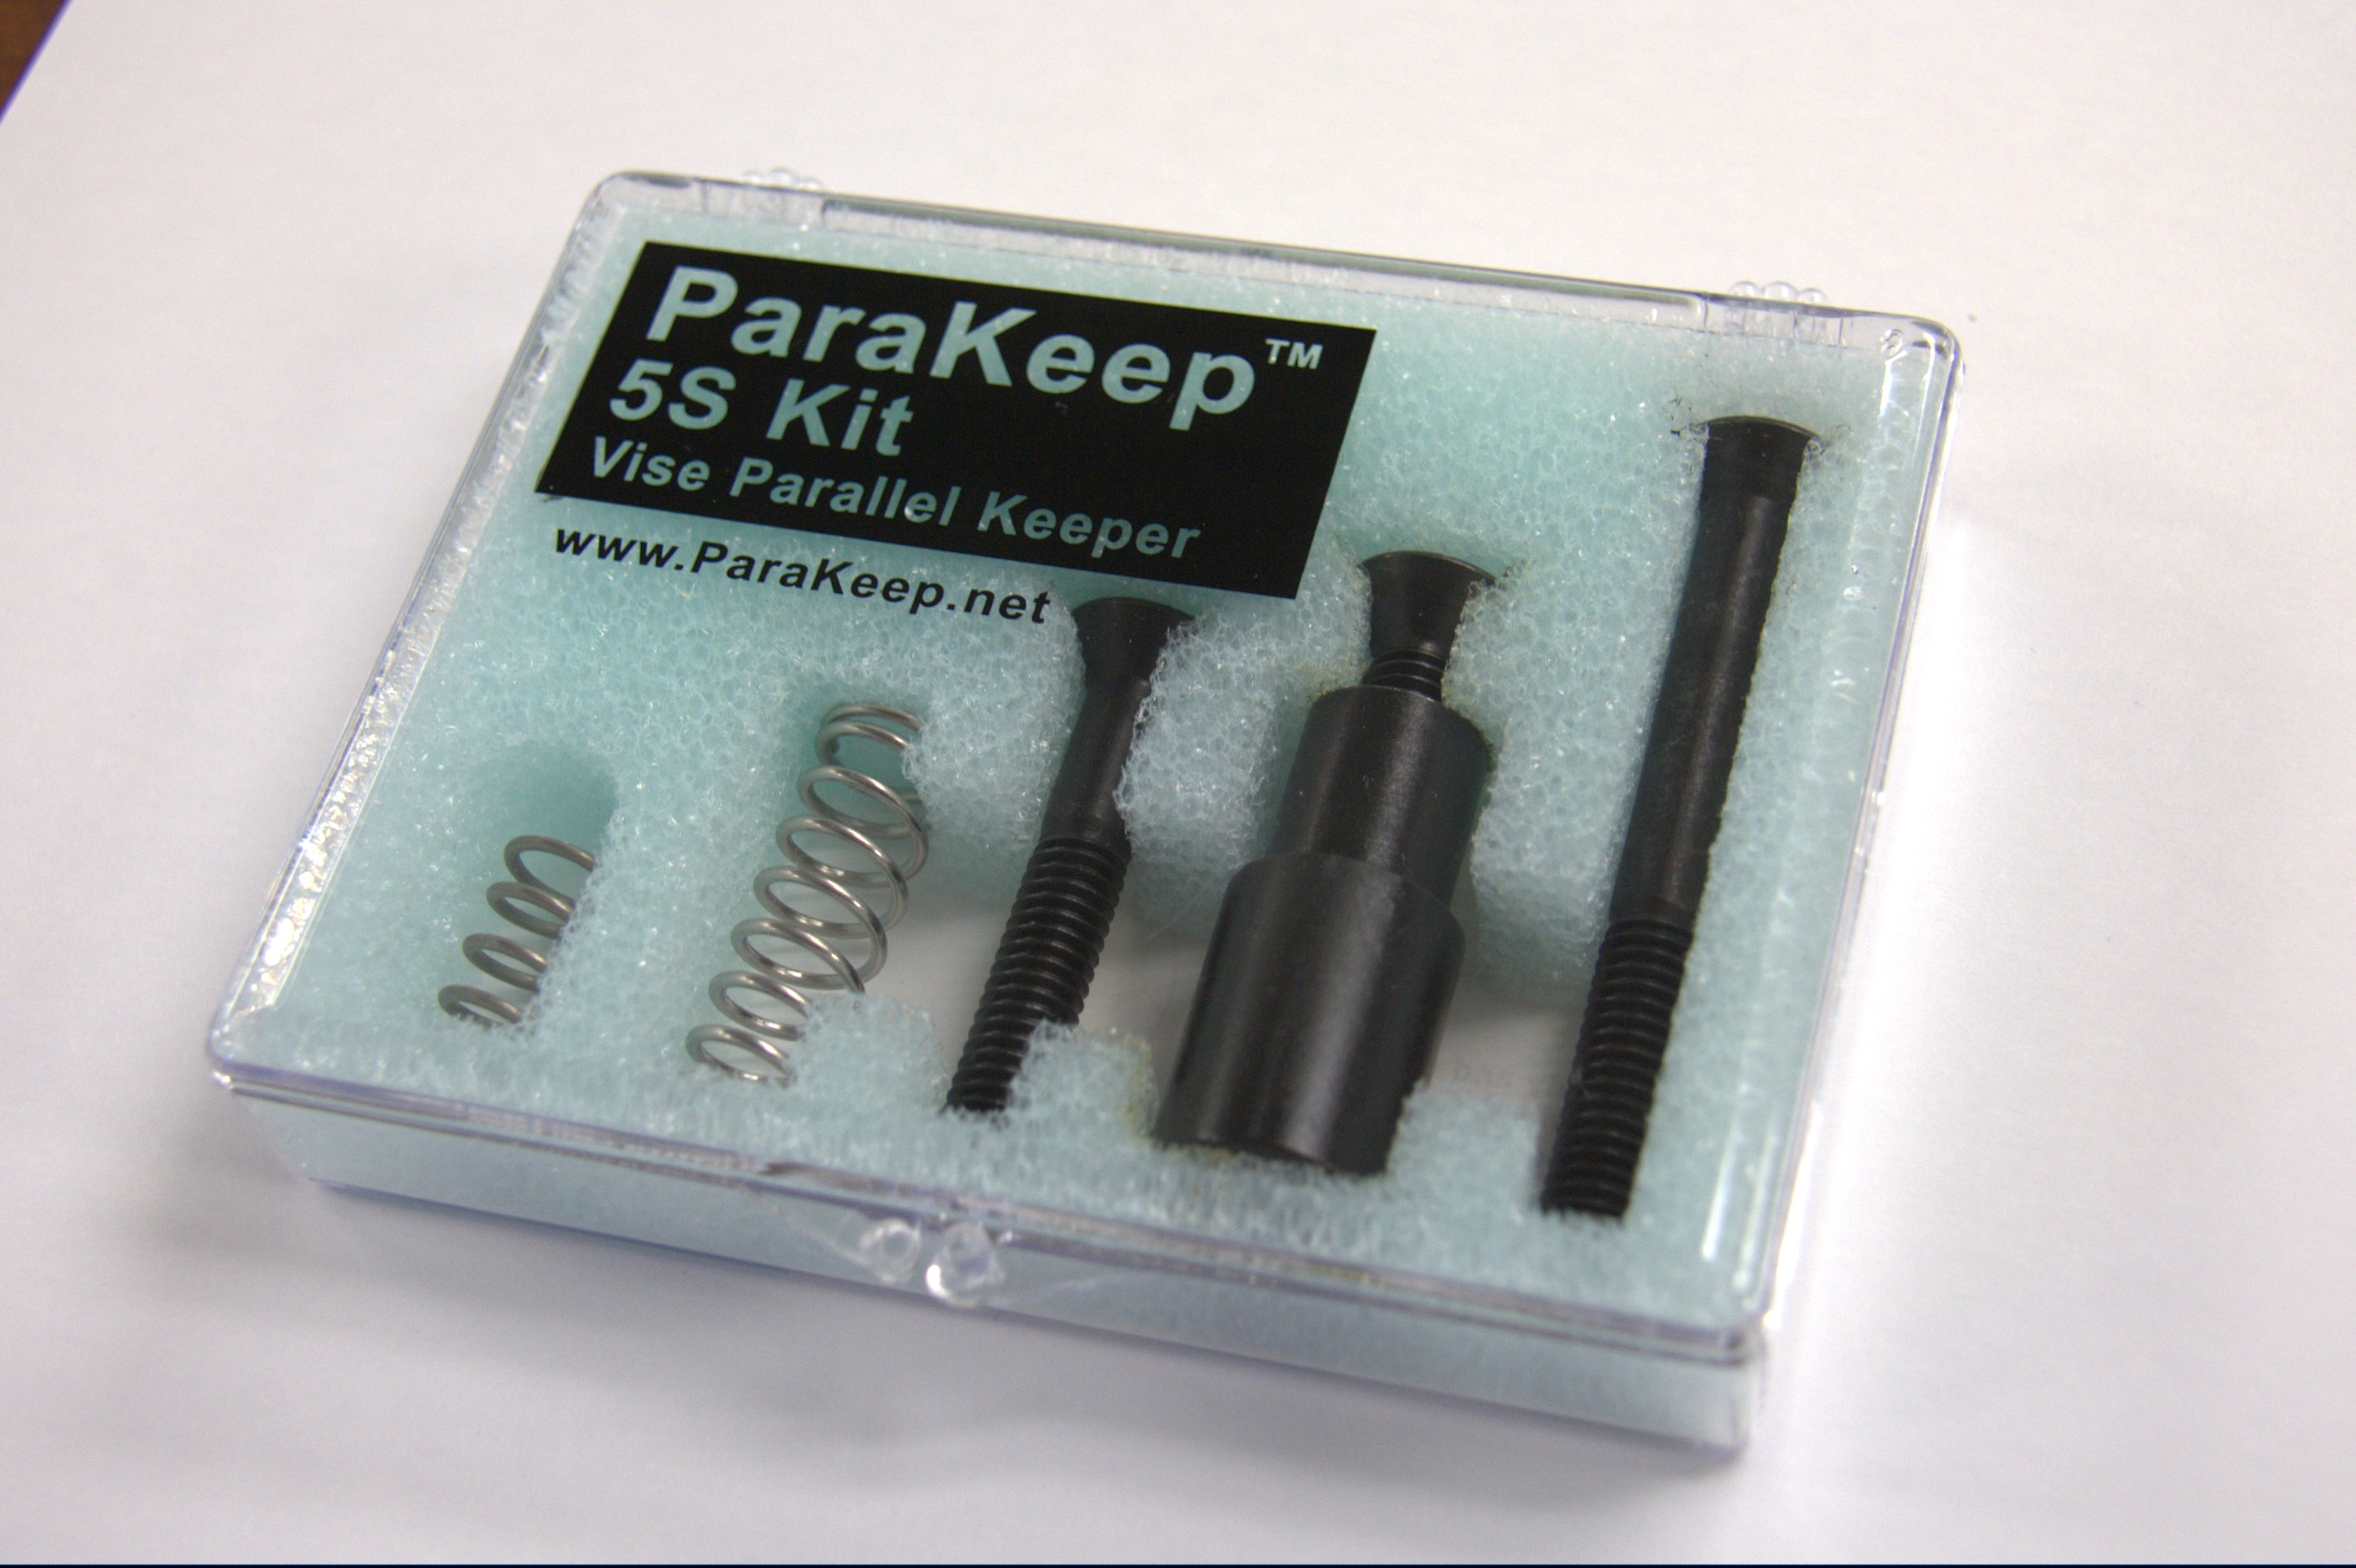 ParaKeep 5S Kit